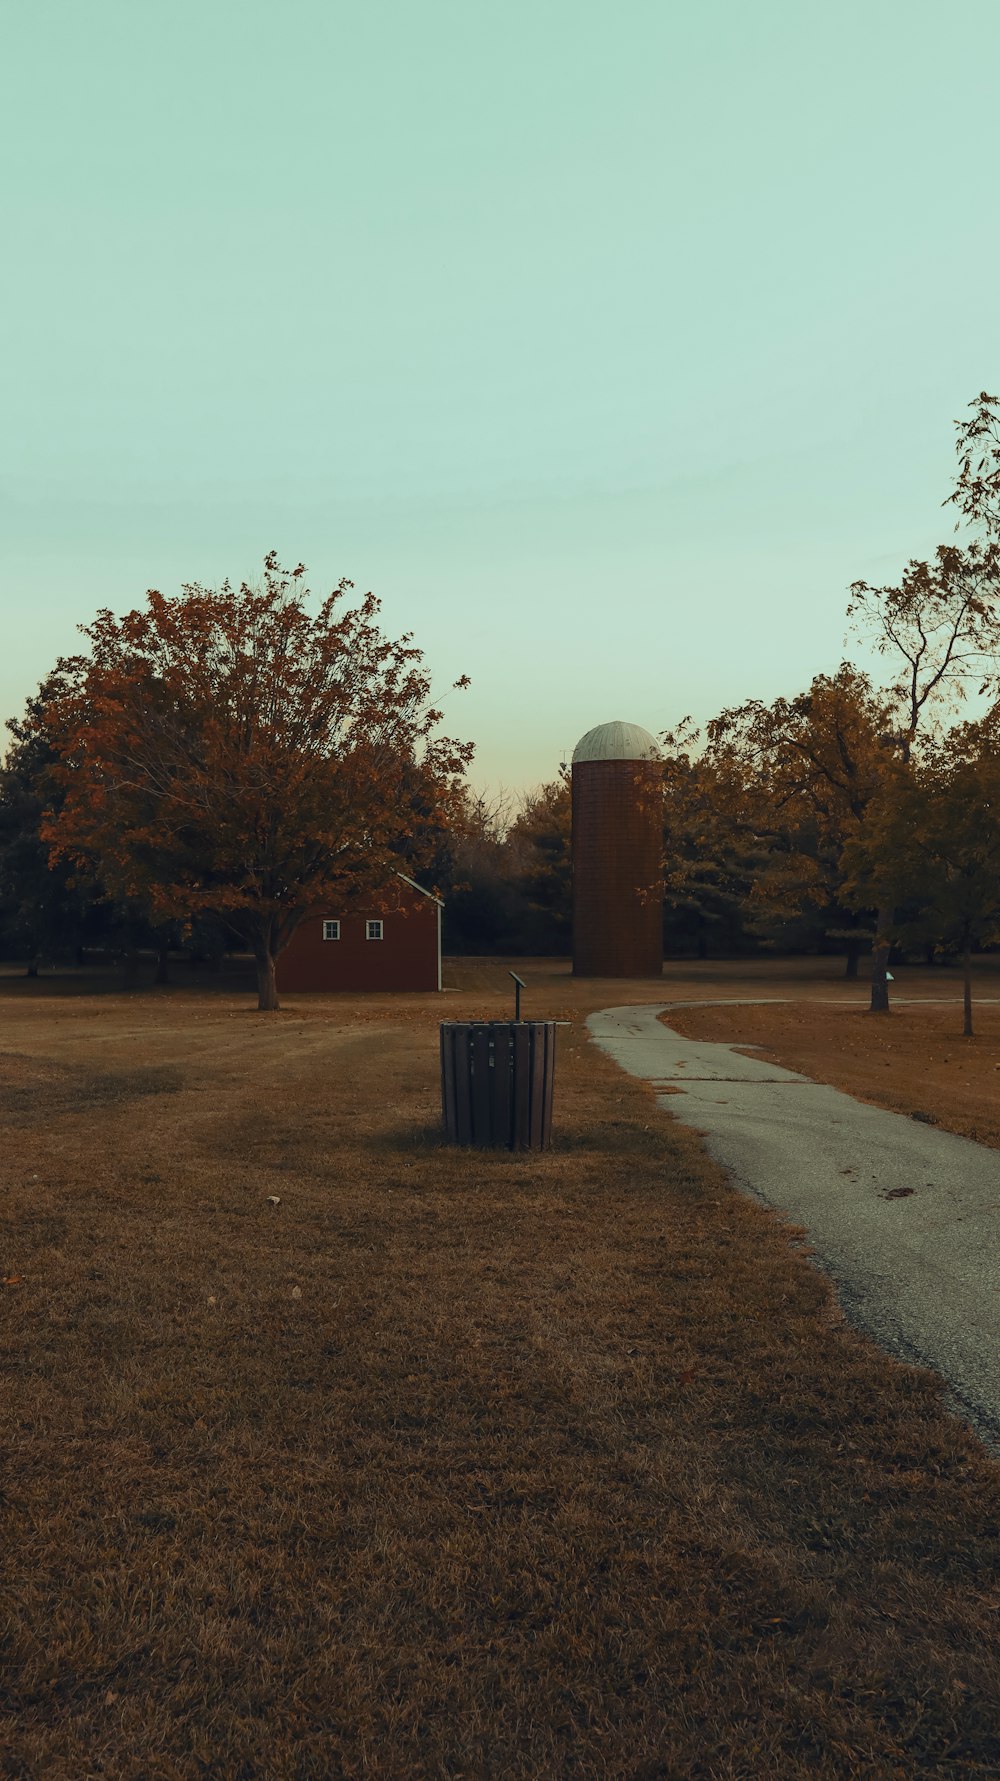 Un champ vide avec un silo au loin